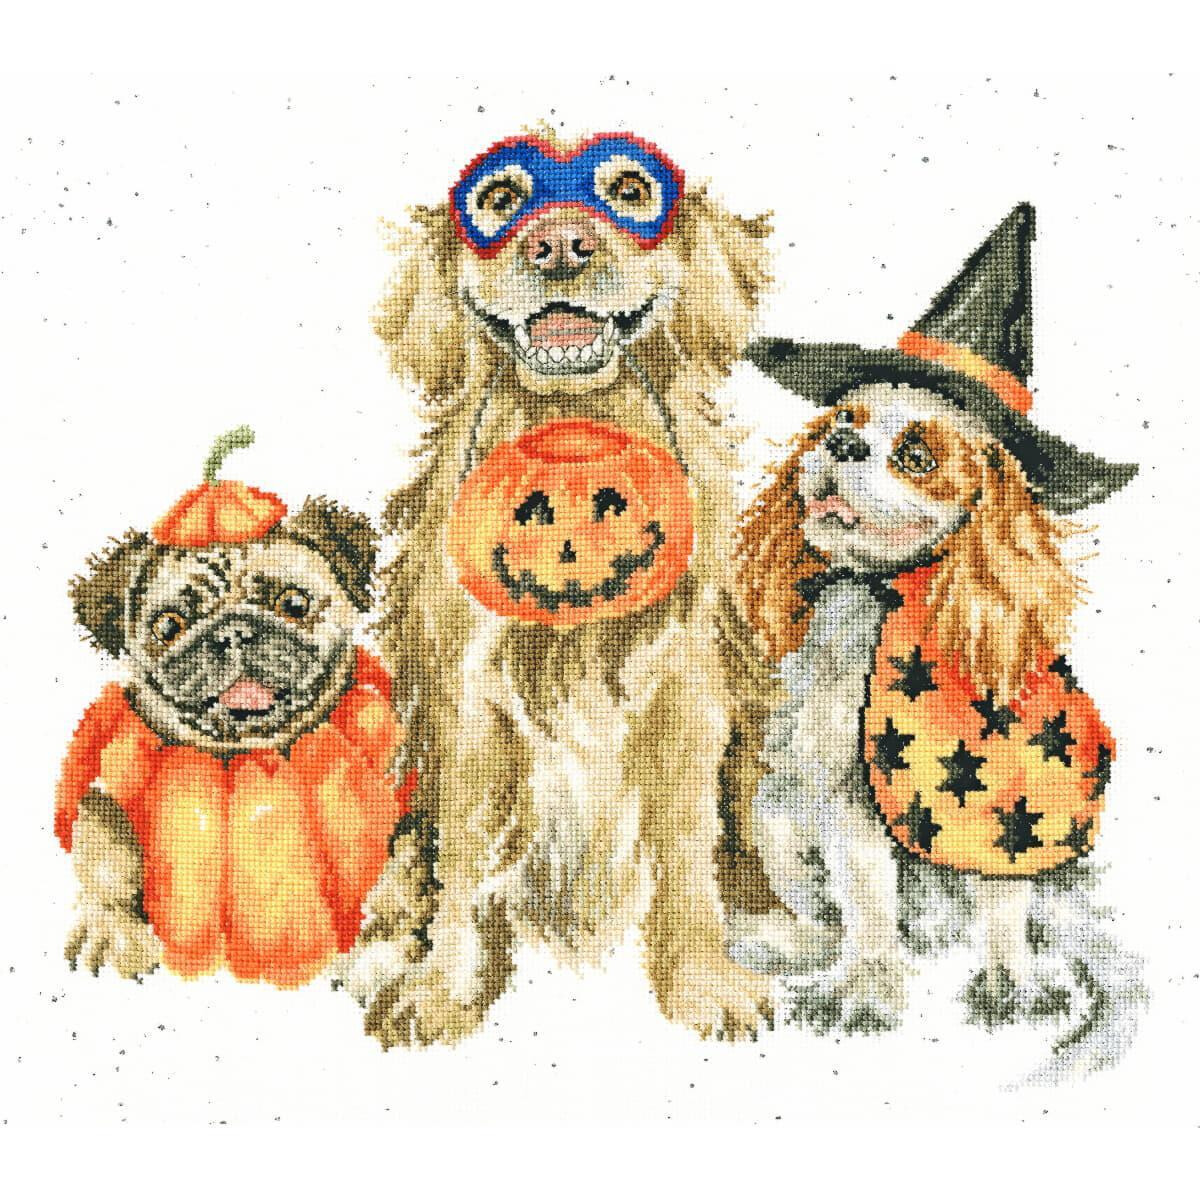 Tre cani in costume di Halloween siedono insieme. Il cane...